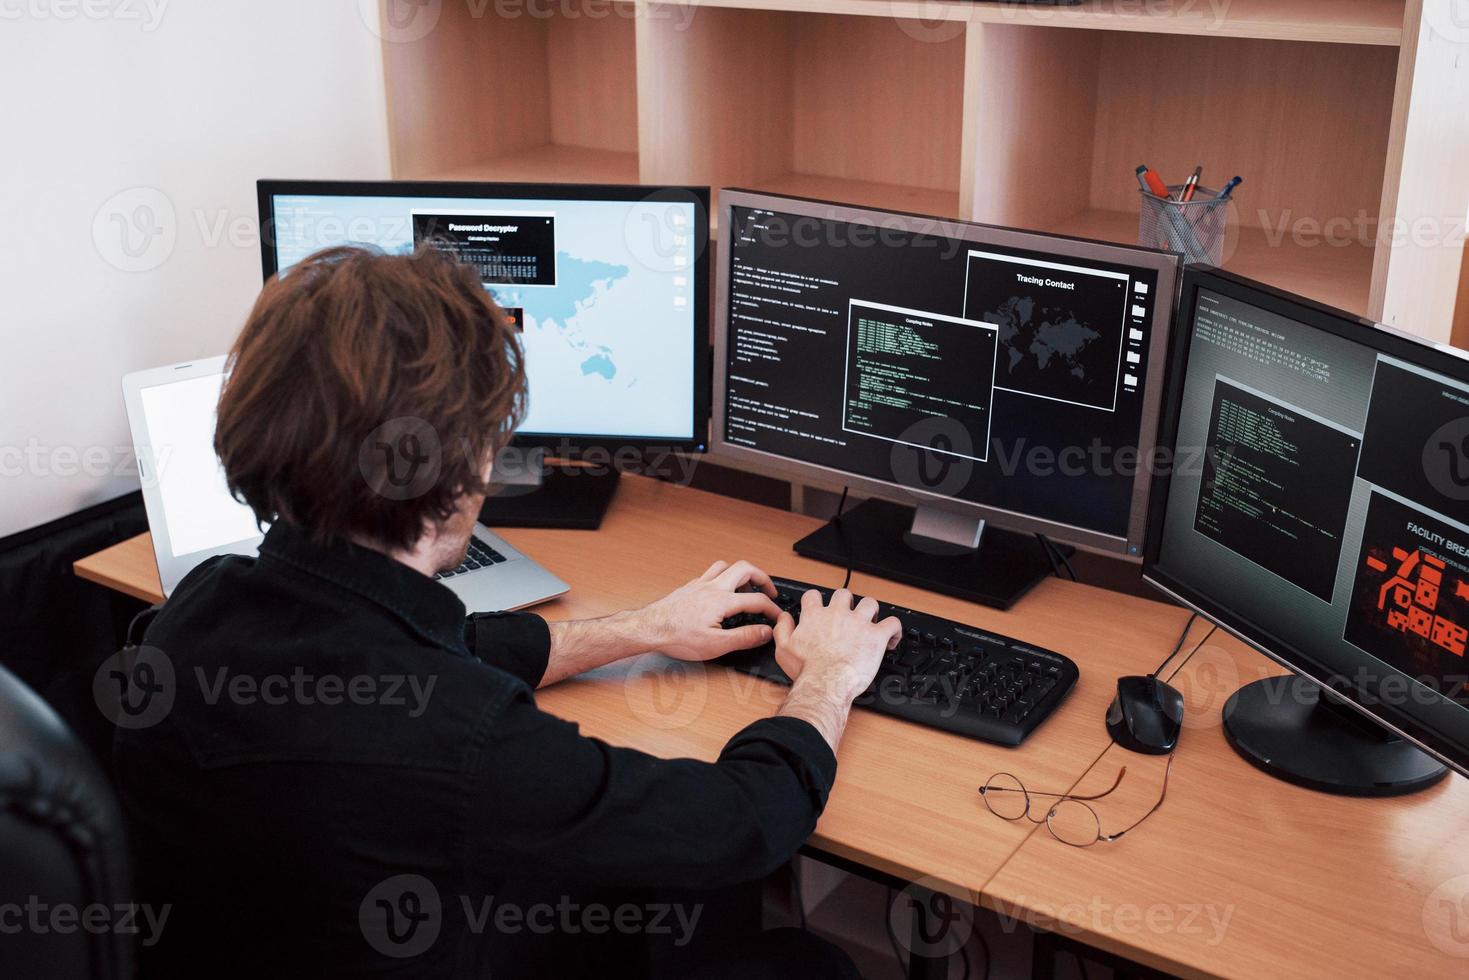 de jonge gevaarlijke hacker breekt overheidsdiensten af door gevoelige gegevens te downloaden en virussen te activeren. een man gebruikt een laptop met veel beeldschermen foto